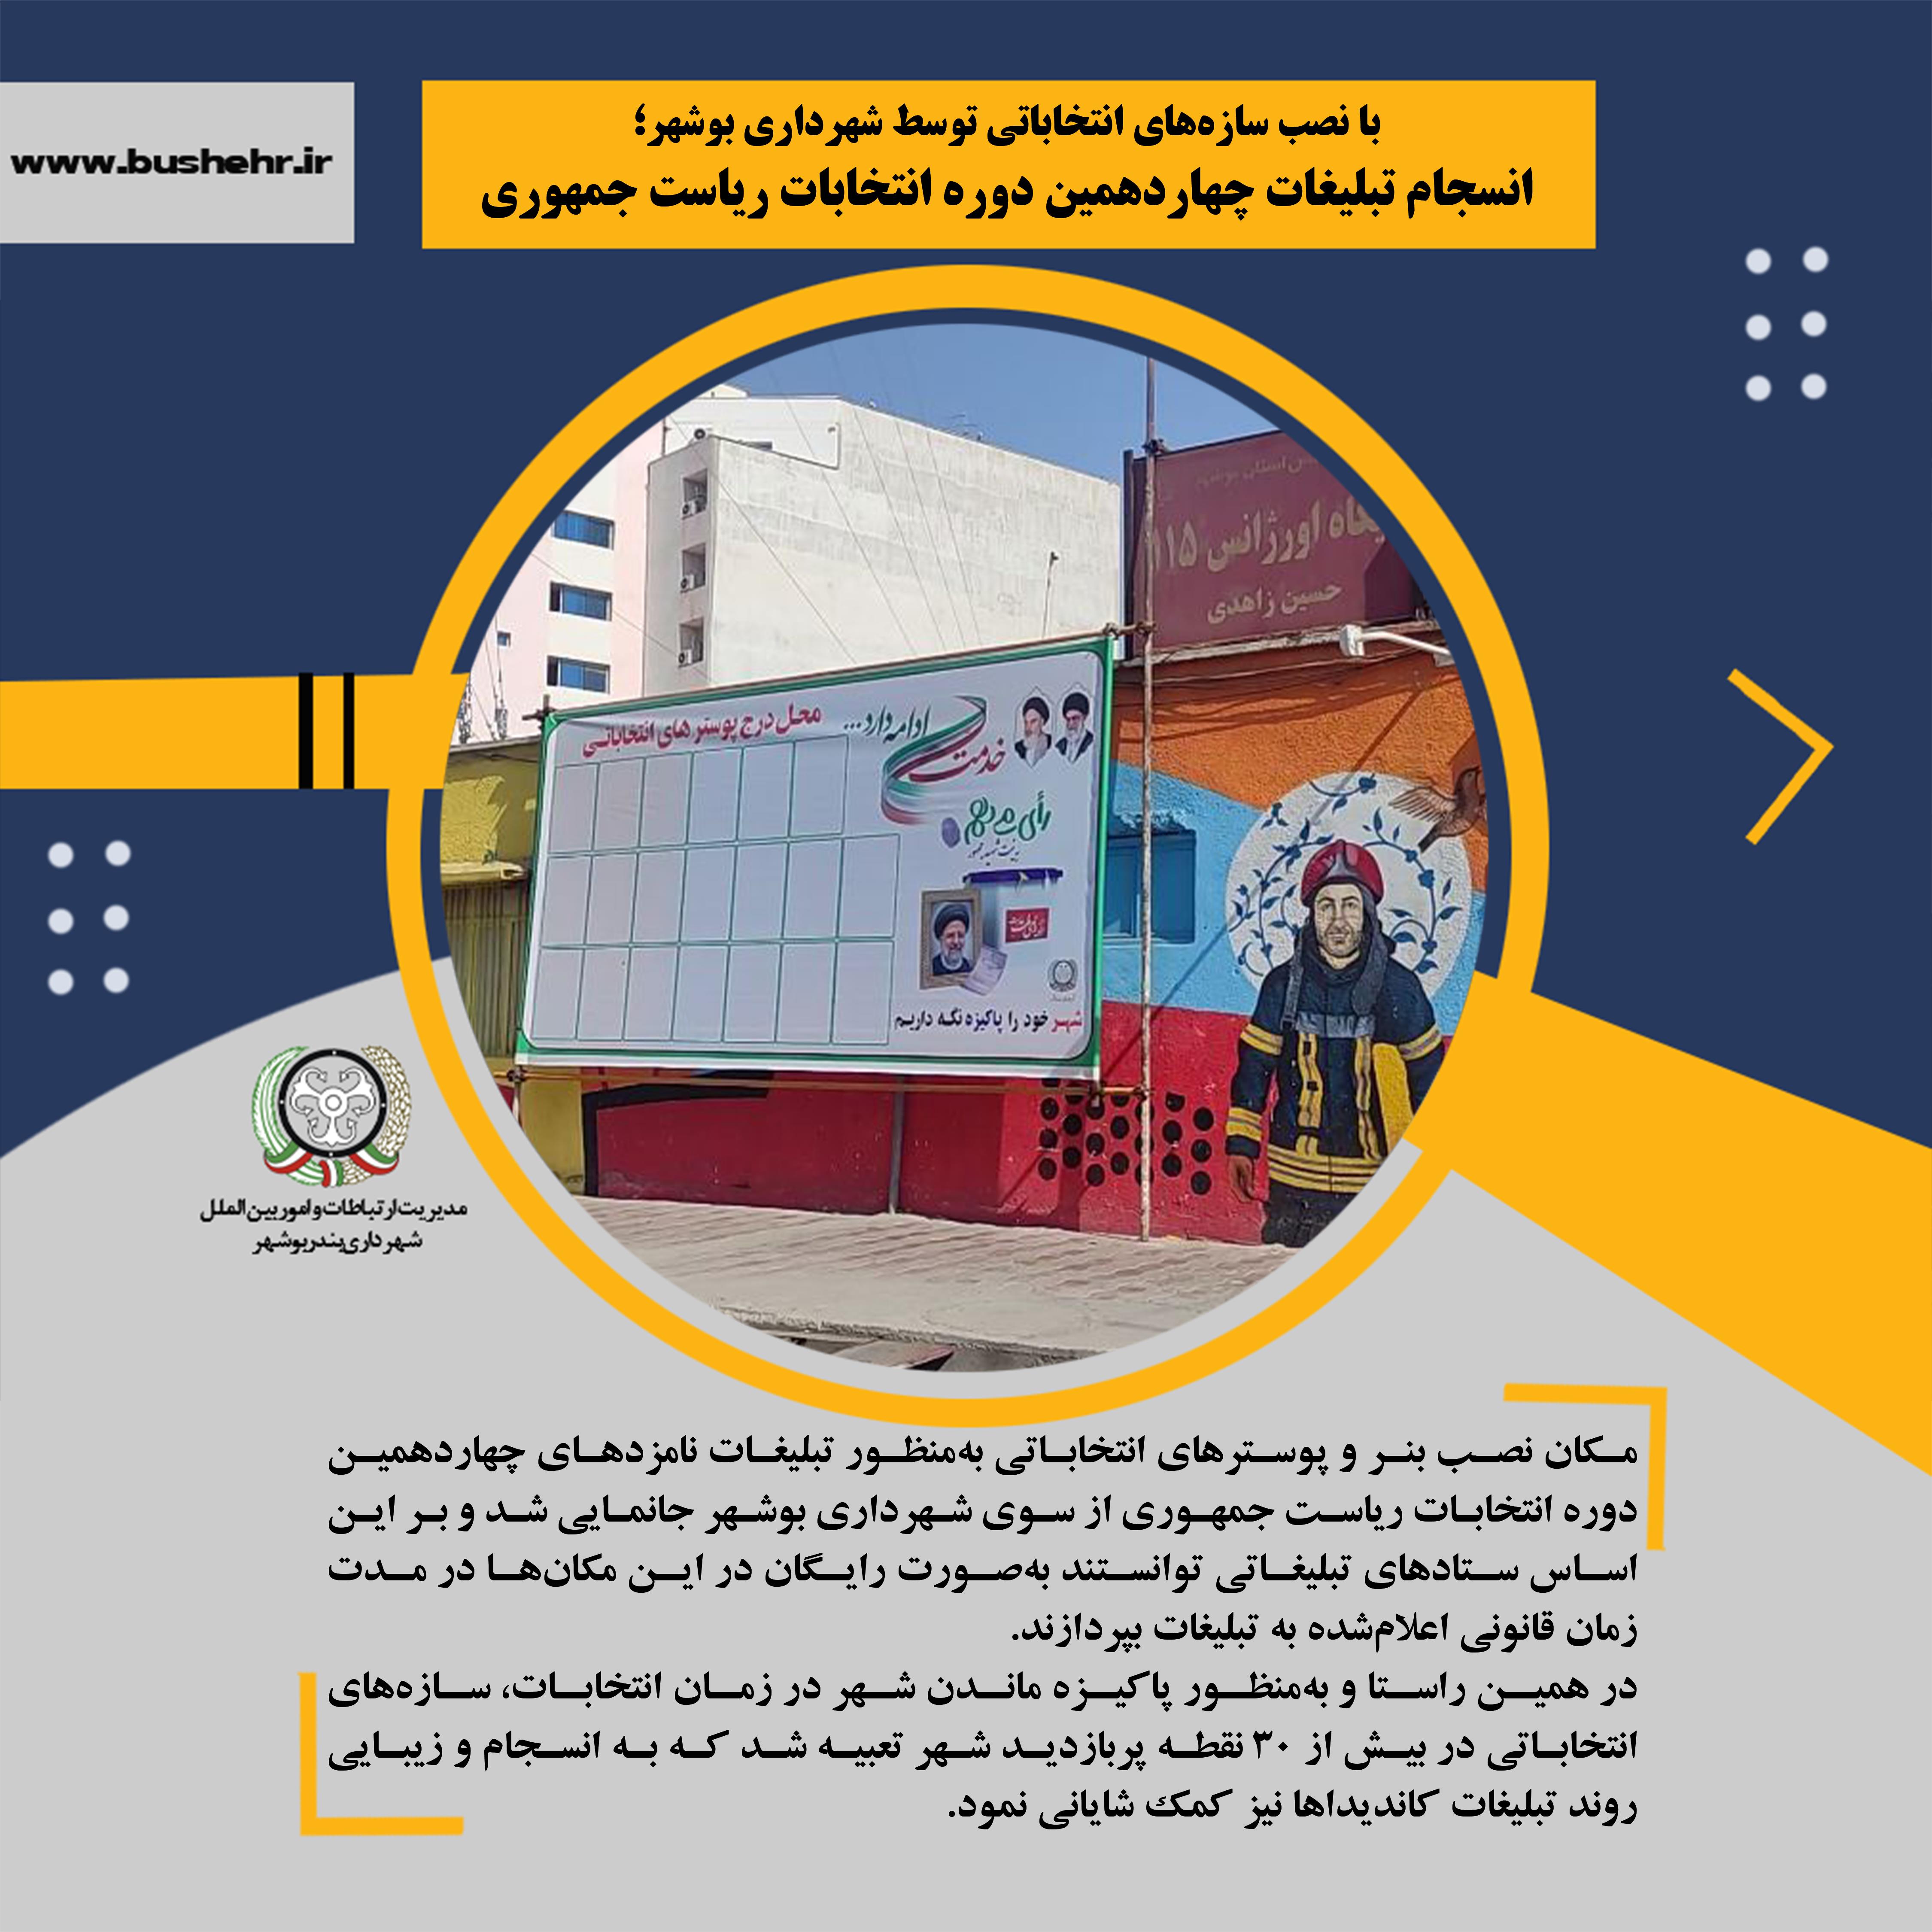 با نصب سازه‌های انتخاباتی توسط شهرداری بوشهر؛ انسجام تبلیغات چهاردهمین دوره انتخابات ریاست جمهوری